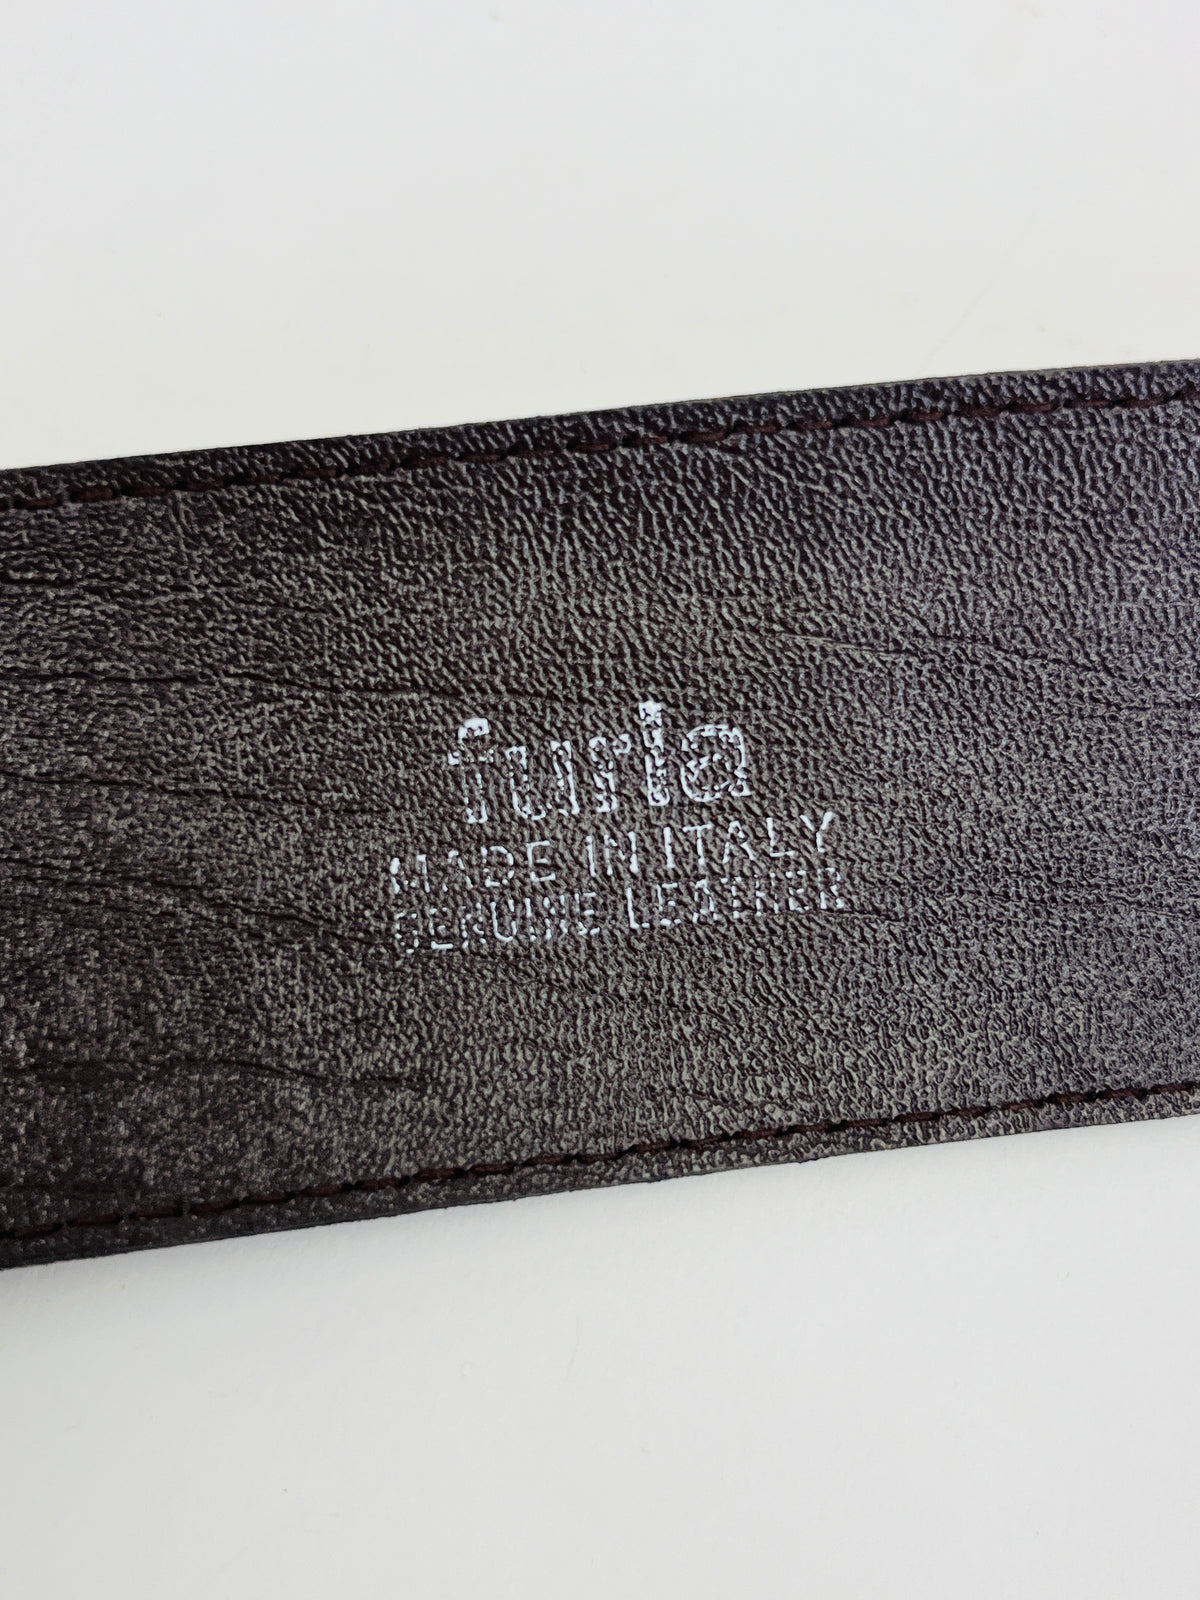 Vintage Leather Furla Belt